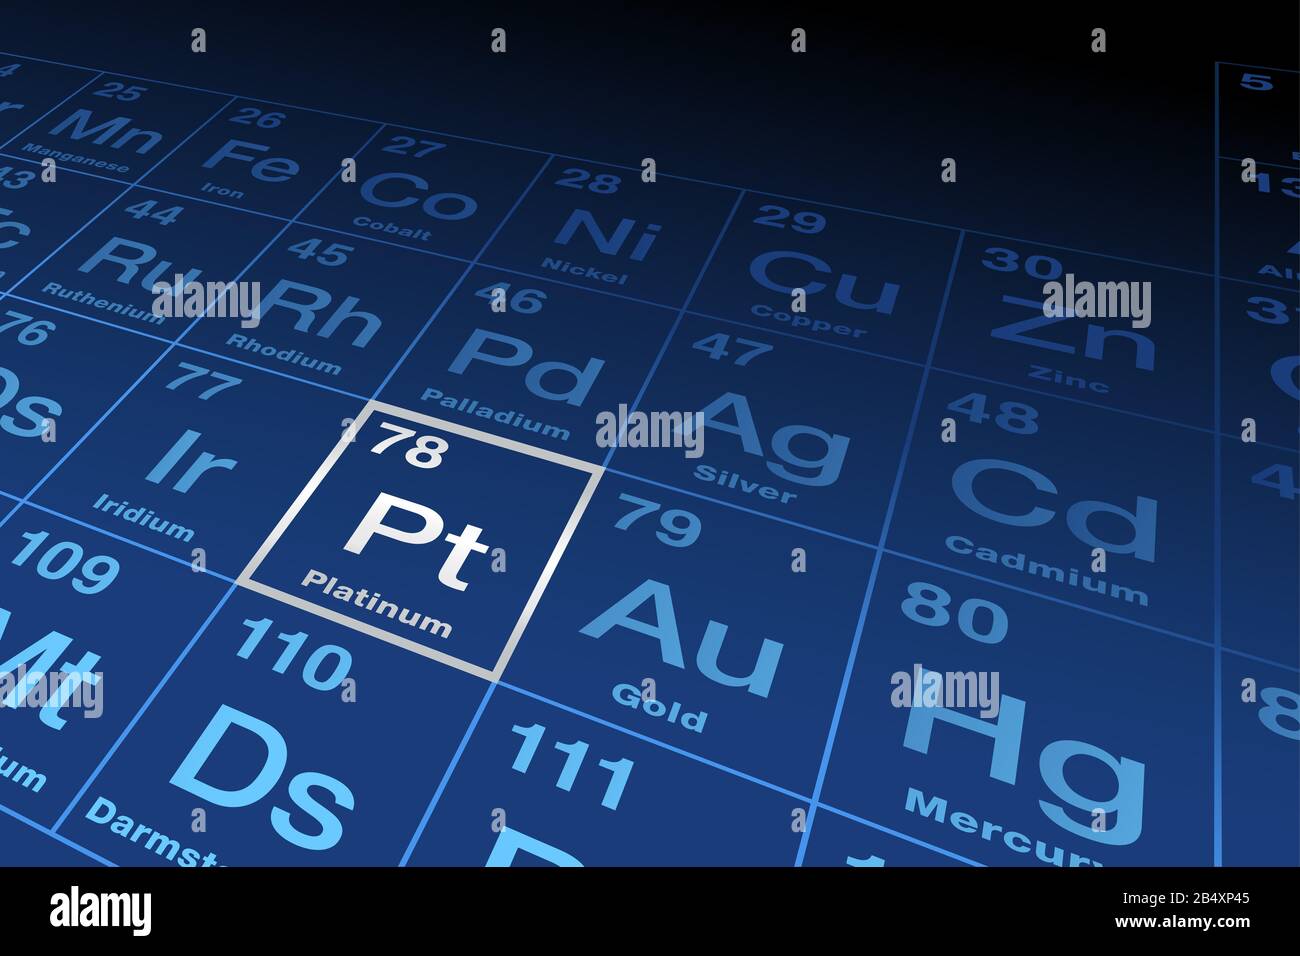 Elemento platino sulla tavola periodica degli elementi. Elemento chimico con simbolo Pt del platino spagnolo e numero atomico 78, un metallo di transizione. Foto Stock